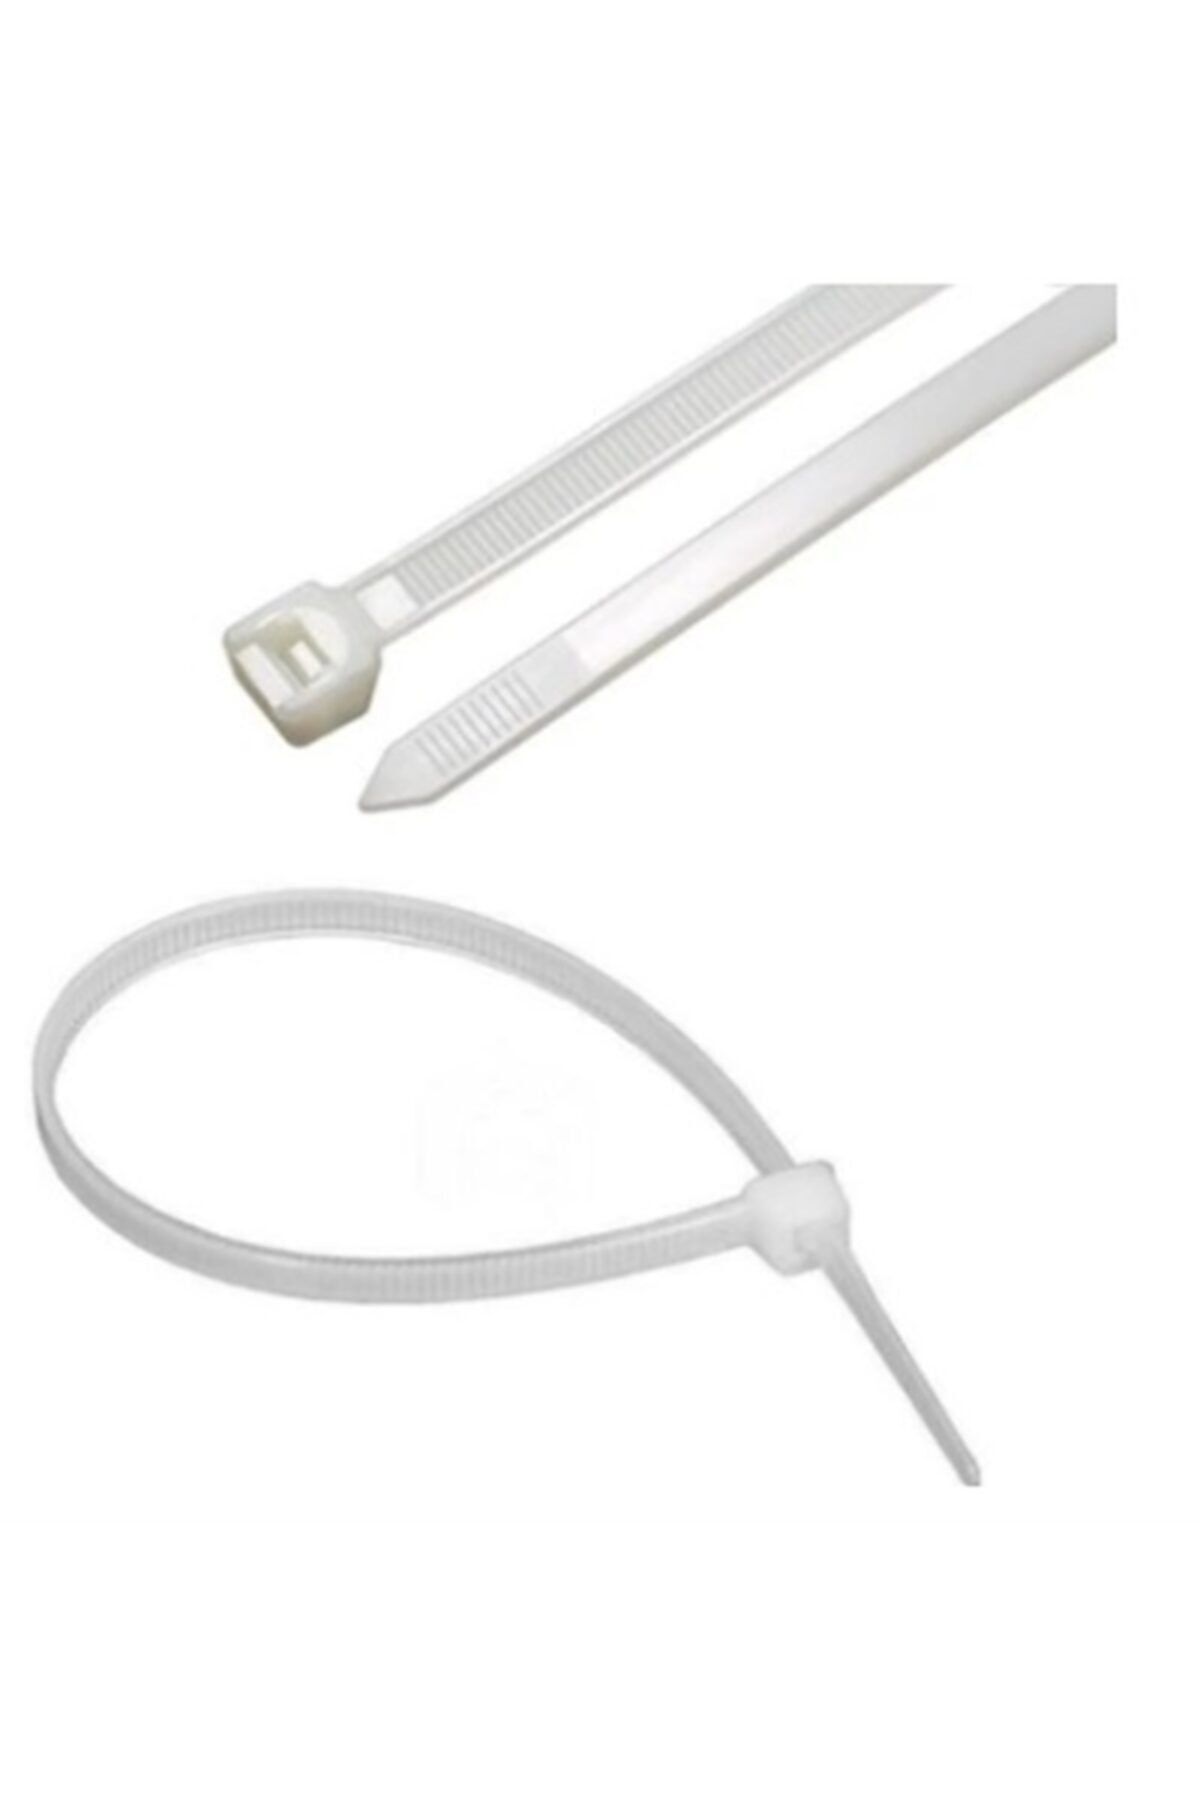 Zenith Beyaz 100 Adet 3,6x200 mm Plastik Cırt Kelepçe-Kablo Bağlayıcı